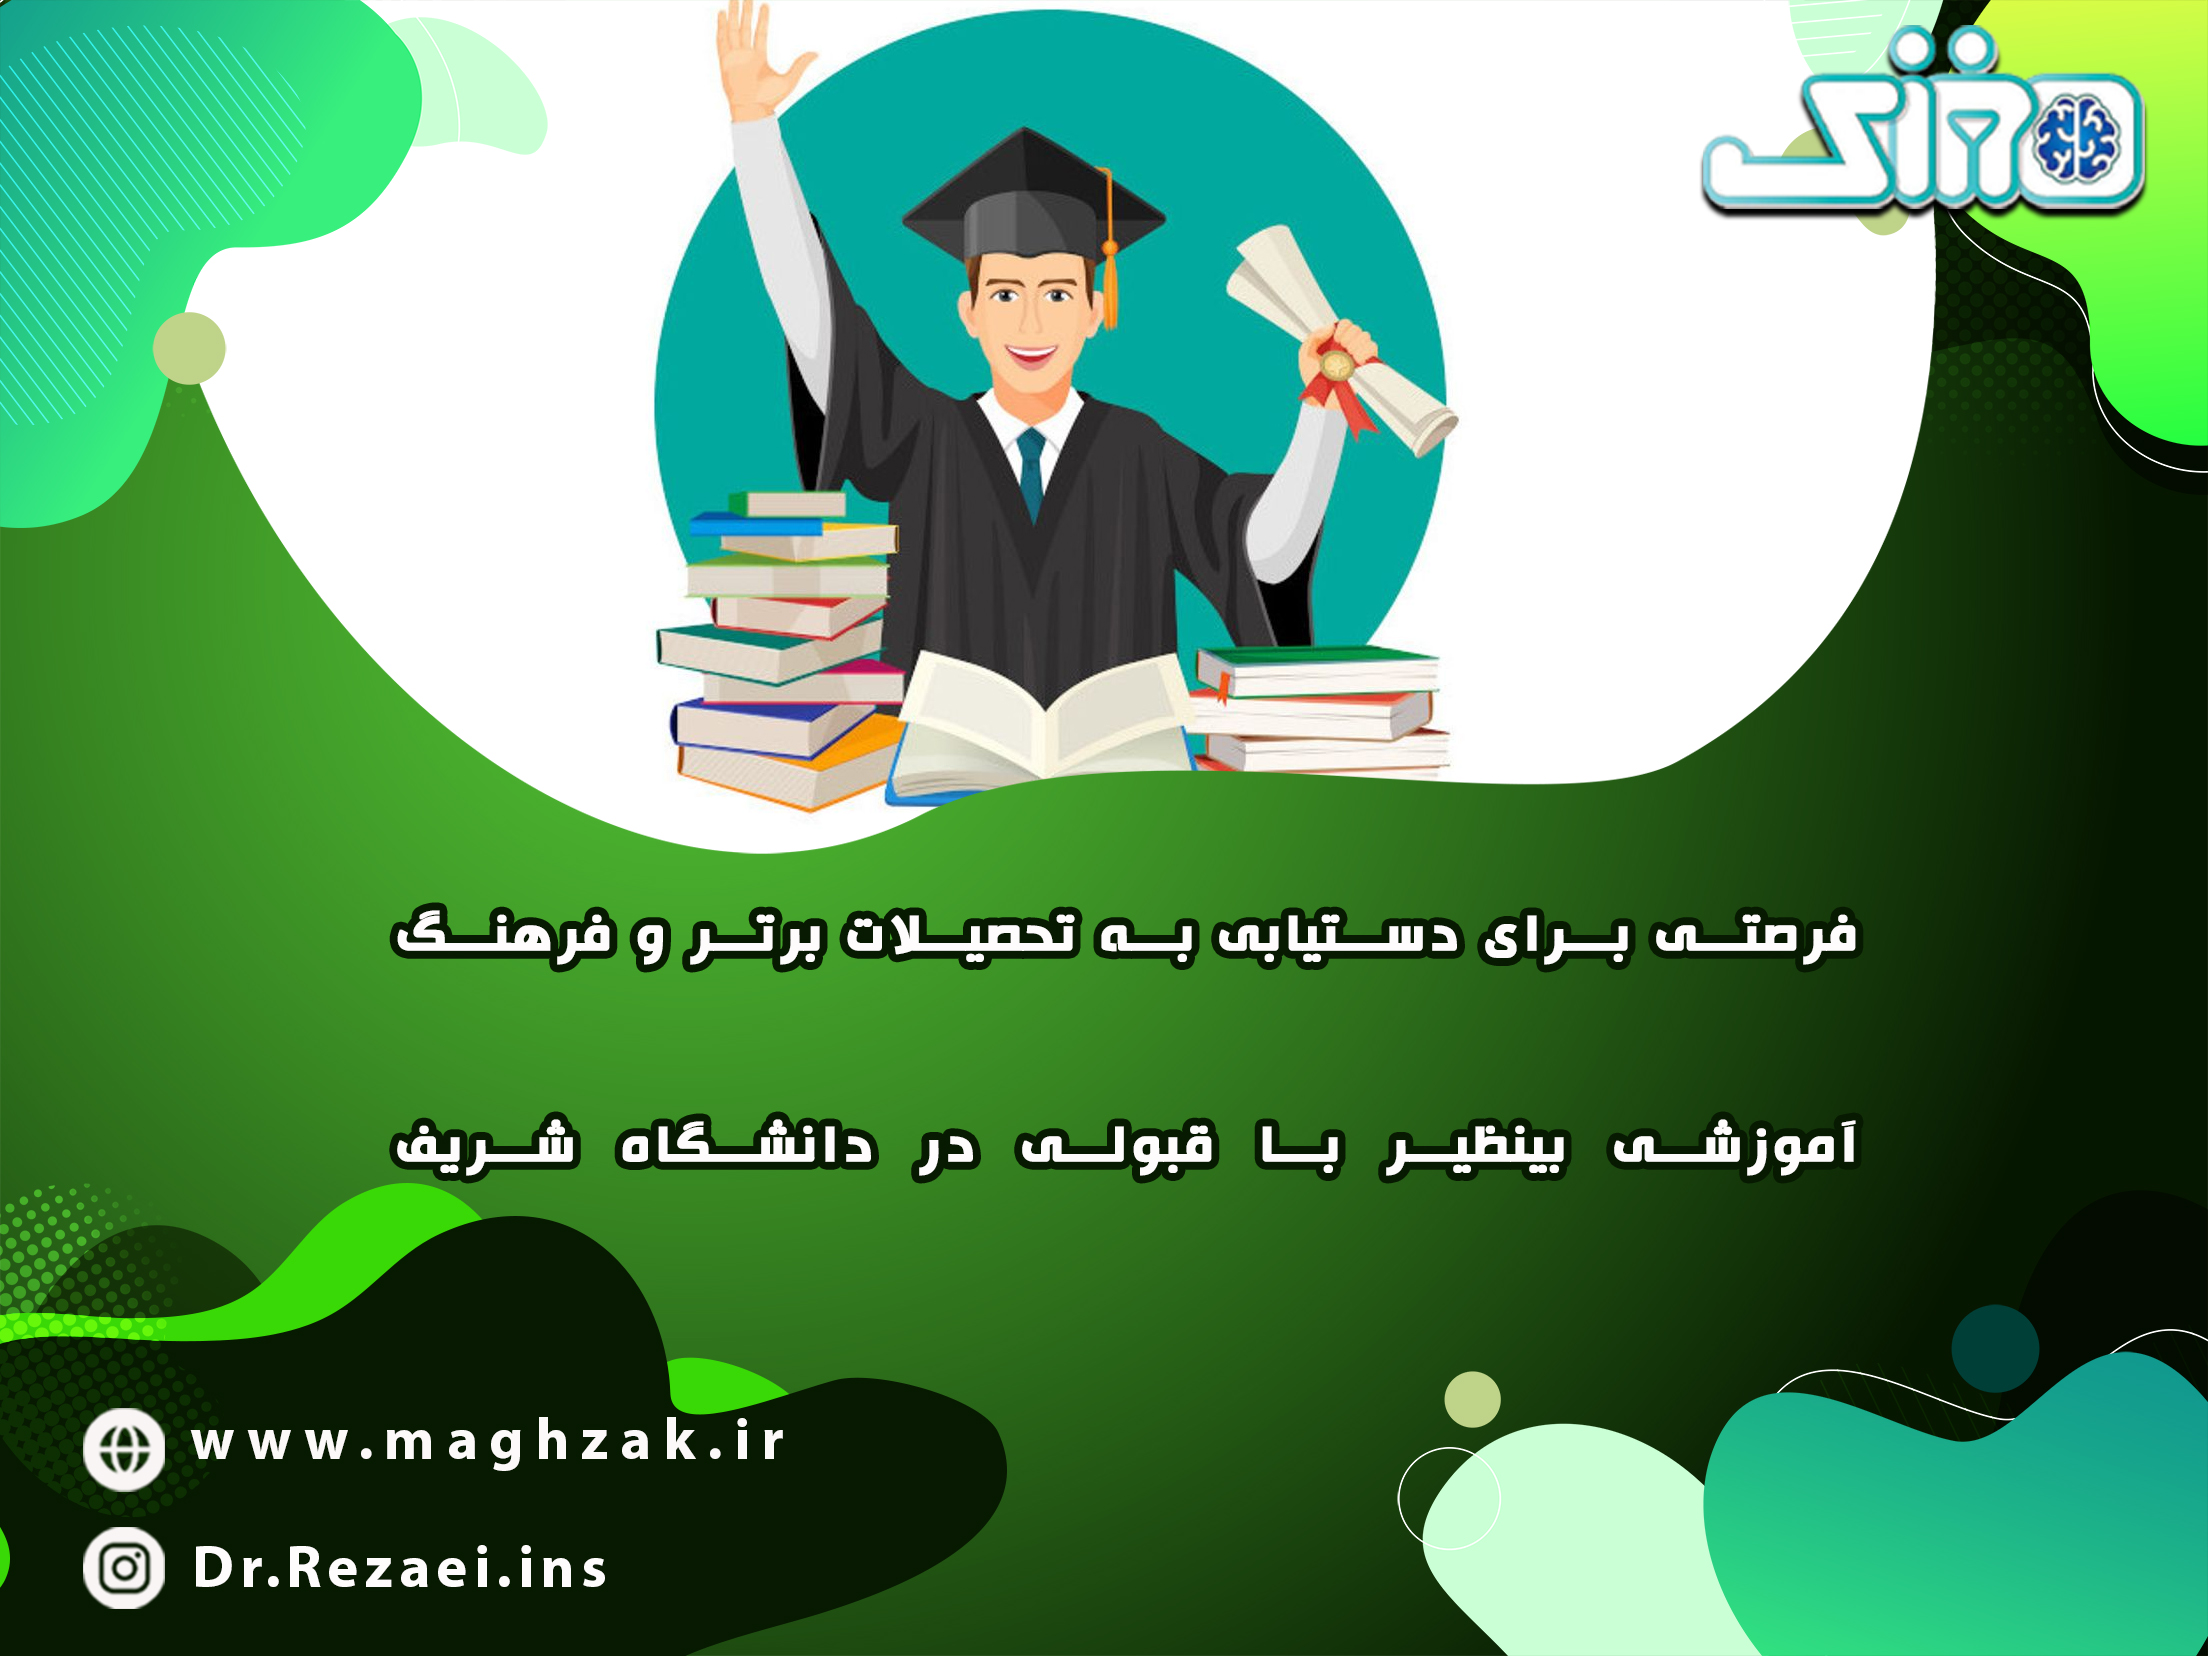 رتبه قبولی در دانشگاه شریف